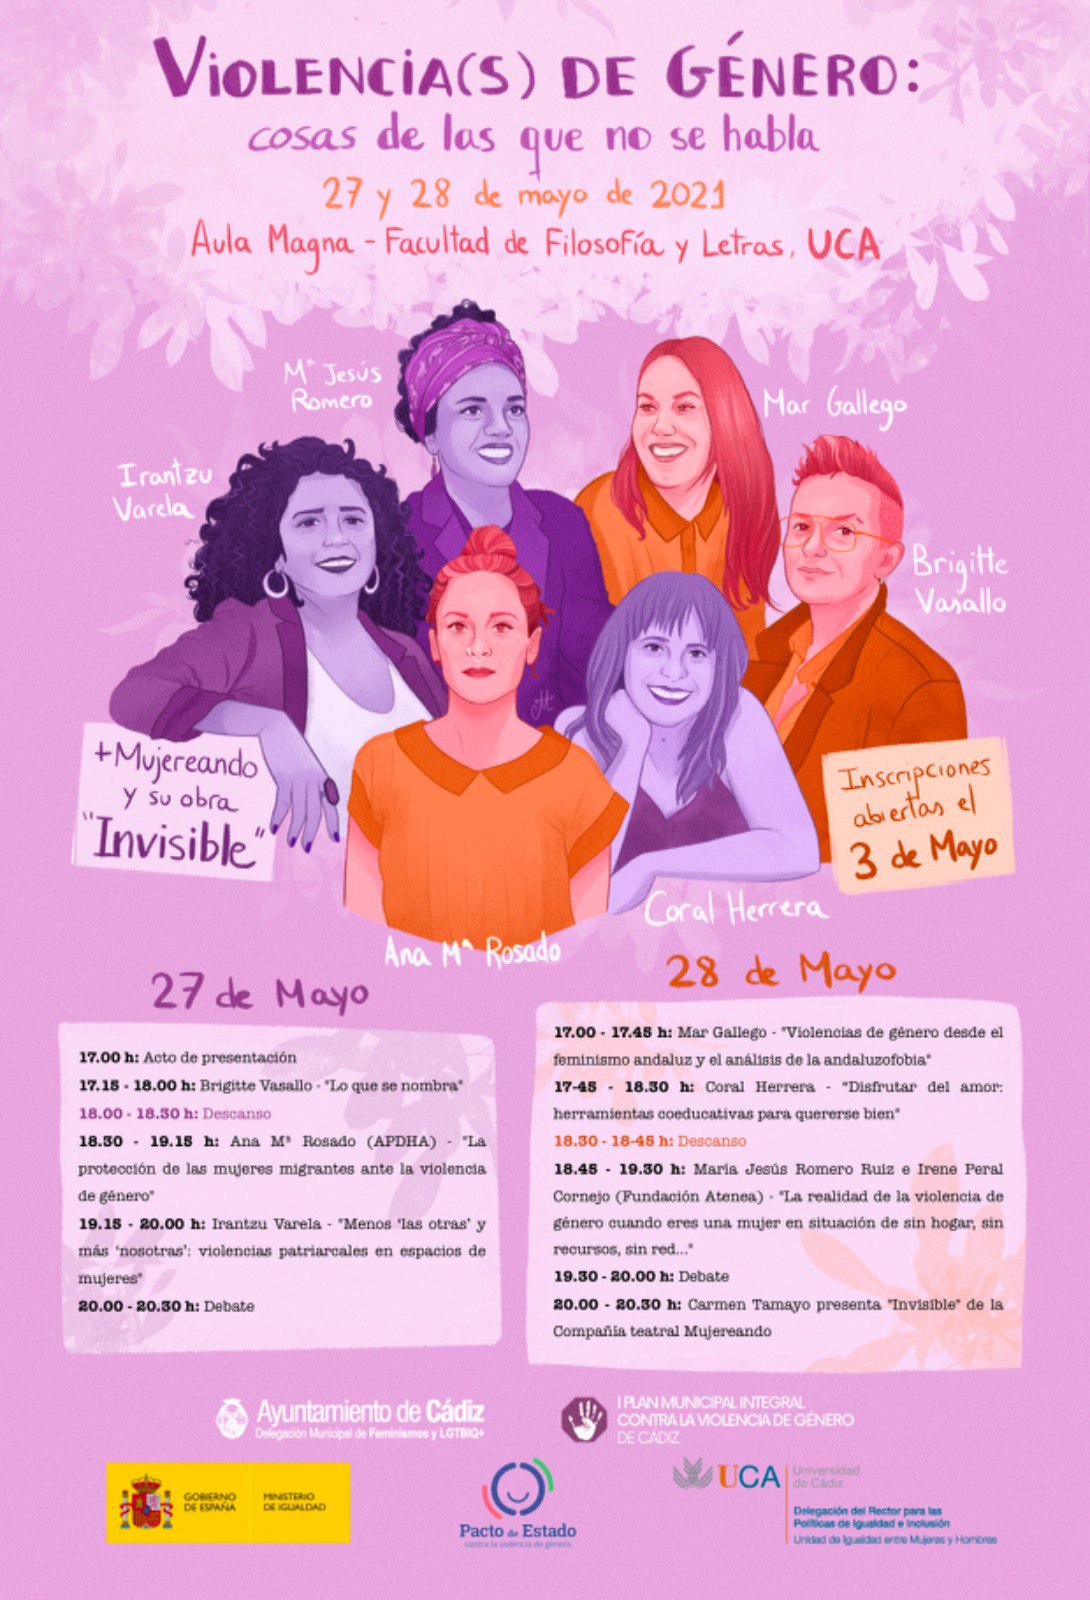 cristal Tregua En honor El Ayuntamiento organiza las jornadas 'Violencia(s) de género: cosas de las  que no se habla' - Transparencia